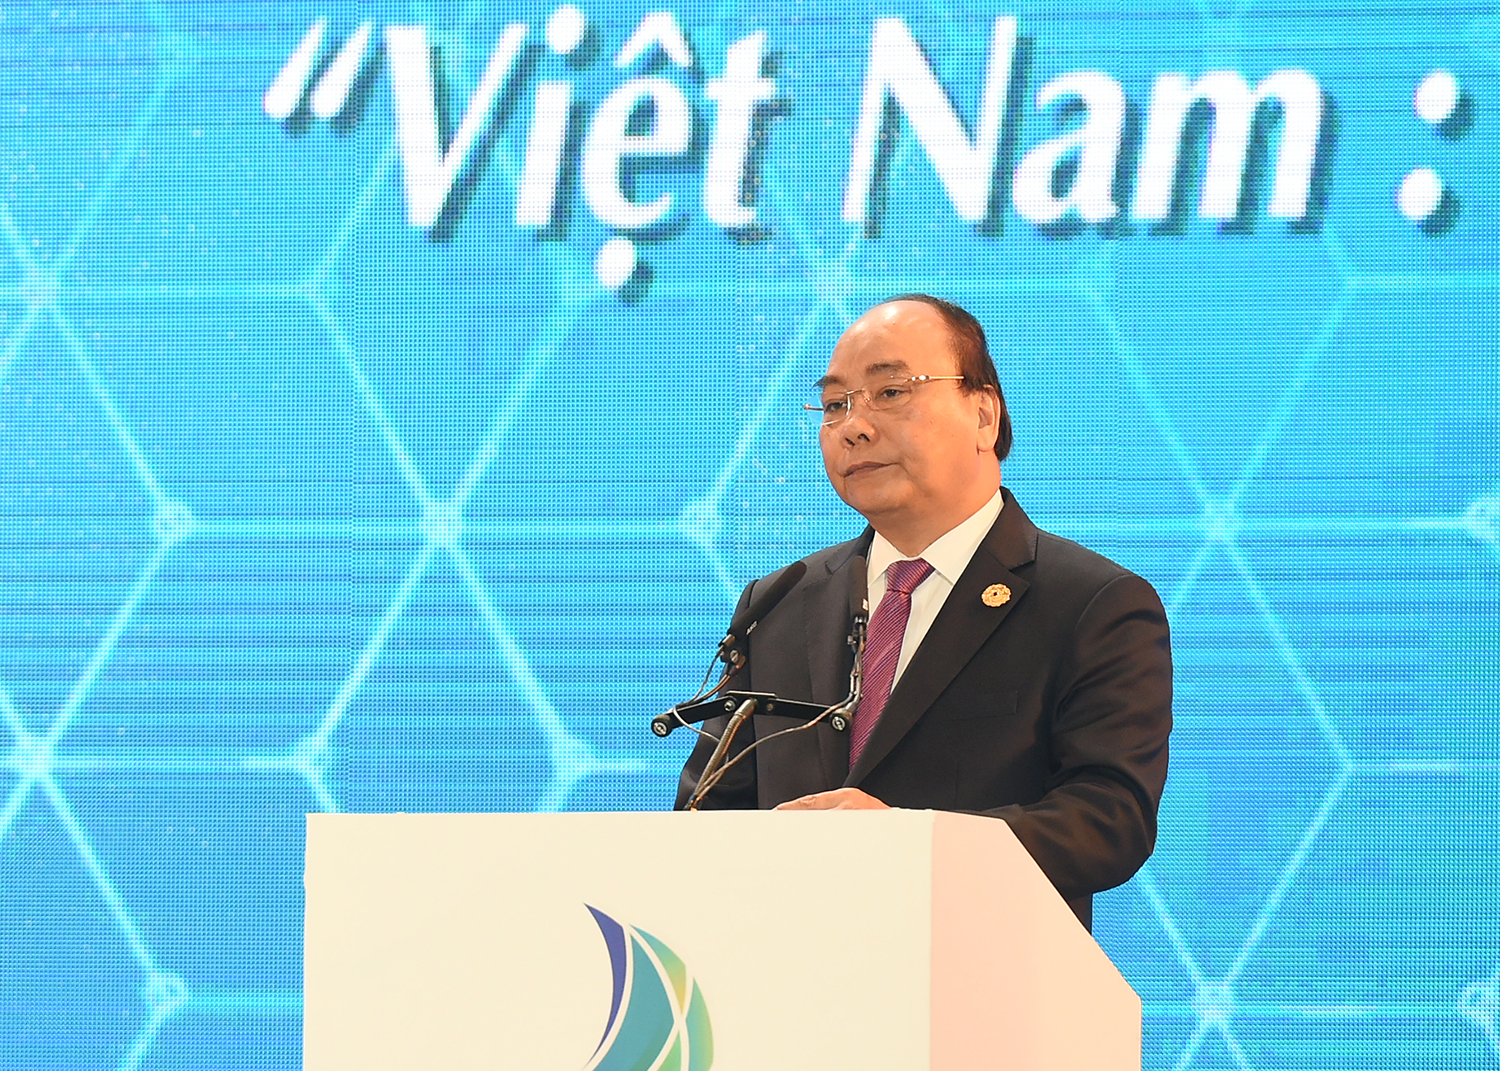 Thủ tướng phát biểu khai mạc Hội nghị Thượng đỉnh Kinh doanh VBS